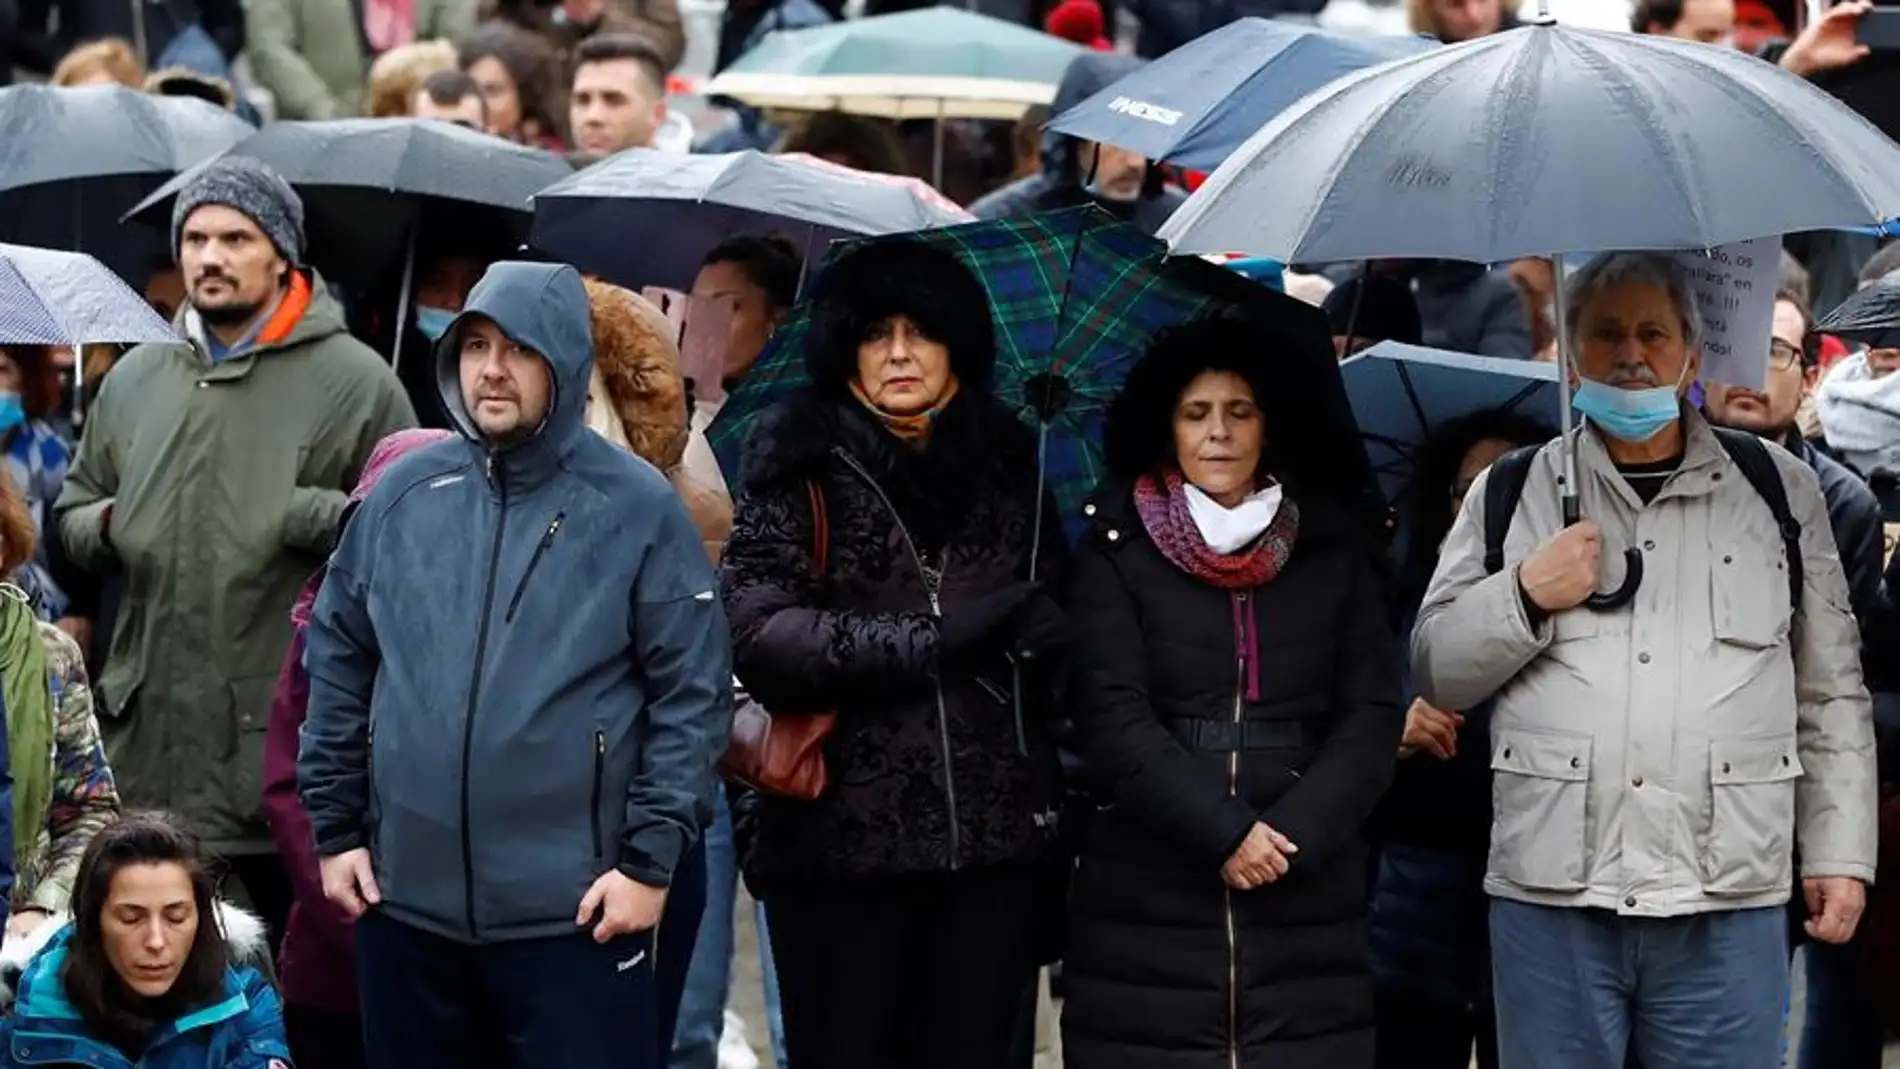 Los negacionistas de la pandemia marchan por Madrid en plena tercera ola: "Fuera dictadura"